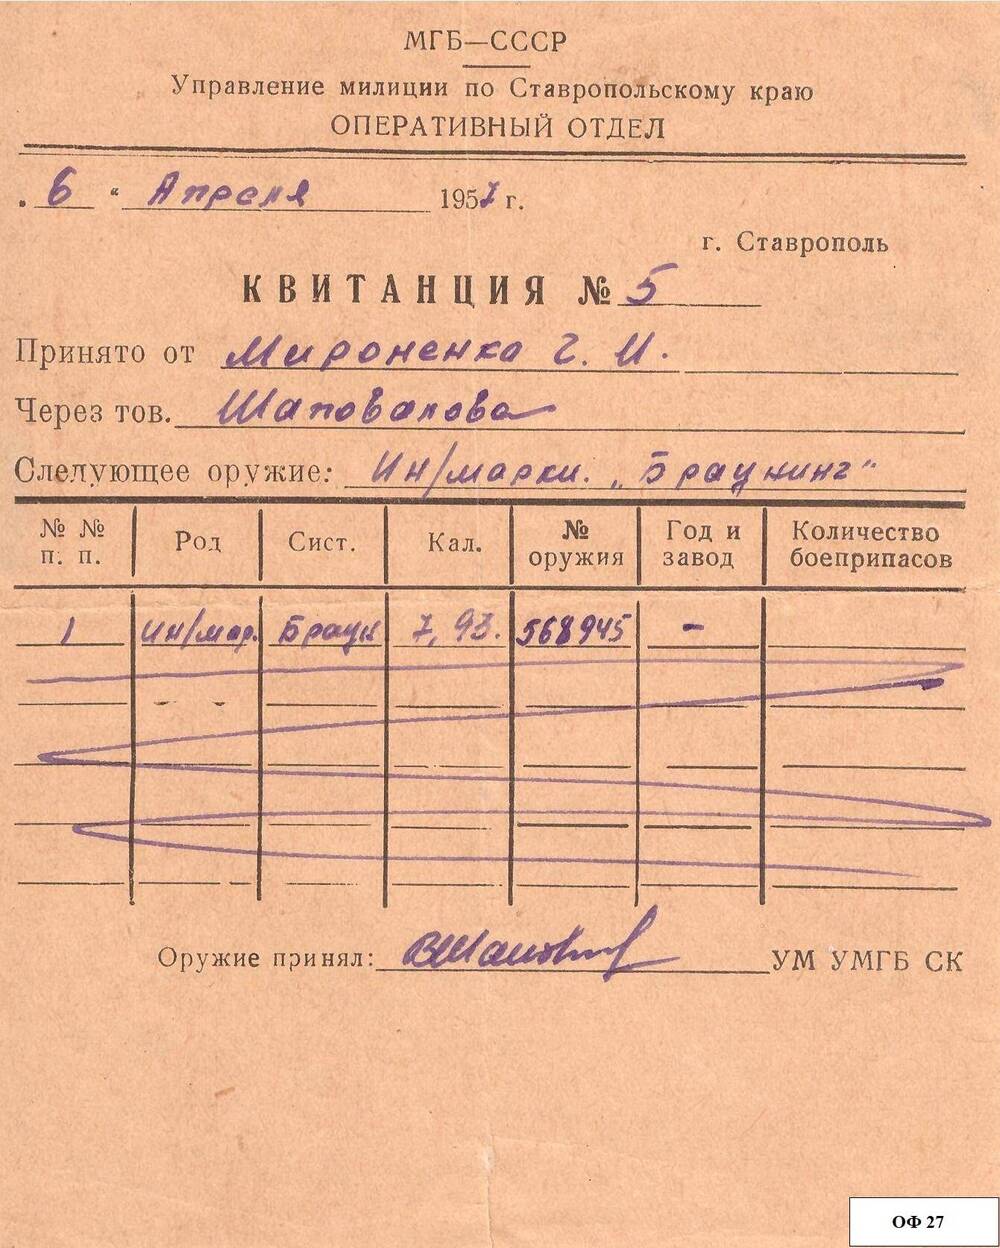 Квитанция № 5 от 6 апреля 1957 г. о сдаче оружия Мироненко Г.И. «Браунинг», подпись управления милиции.